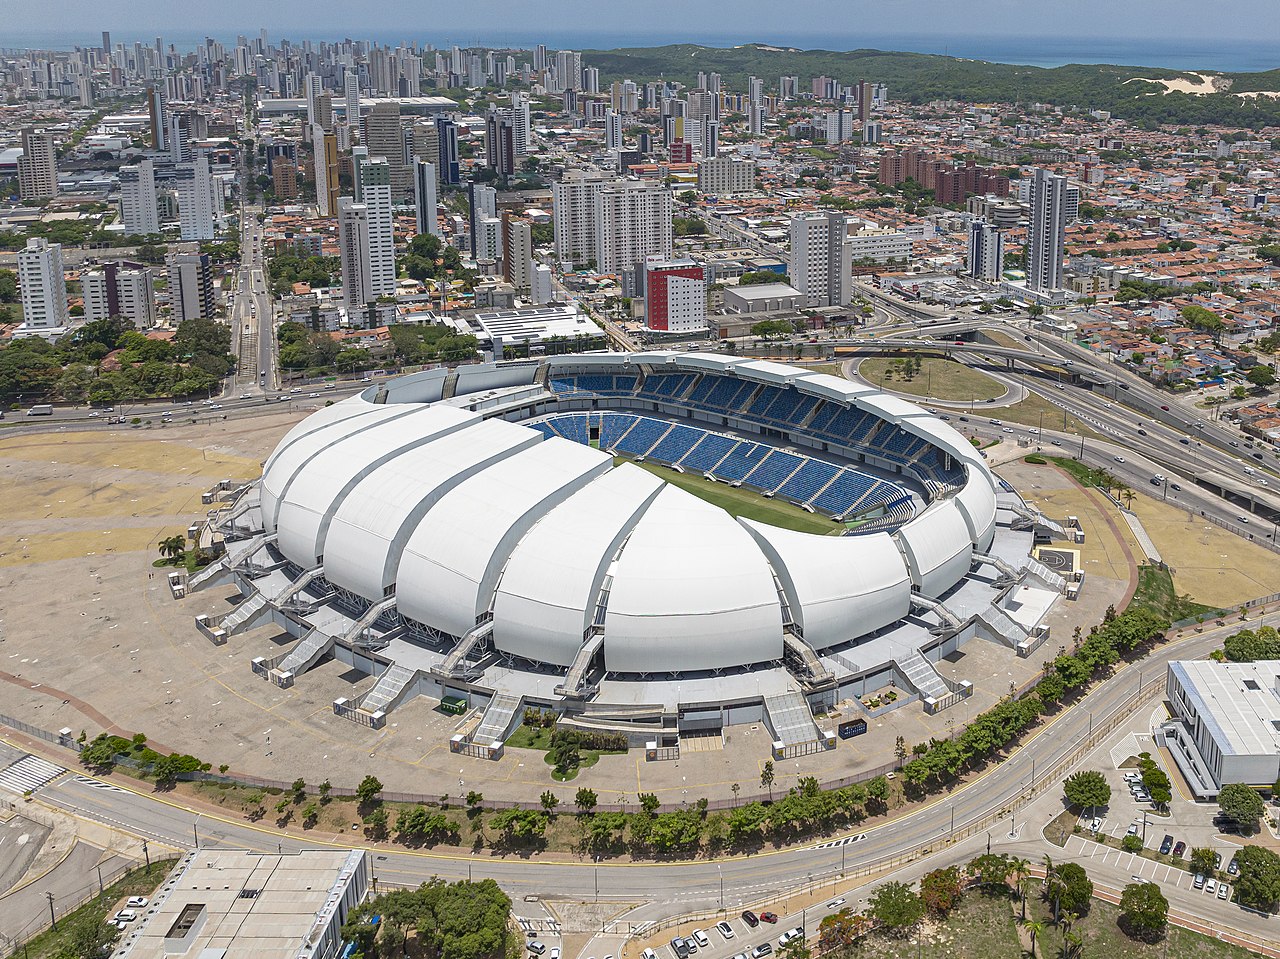 Estadio Arena das Dunas